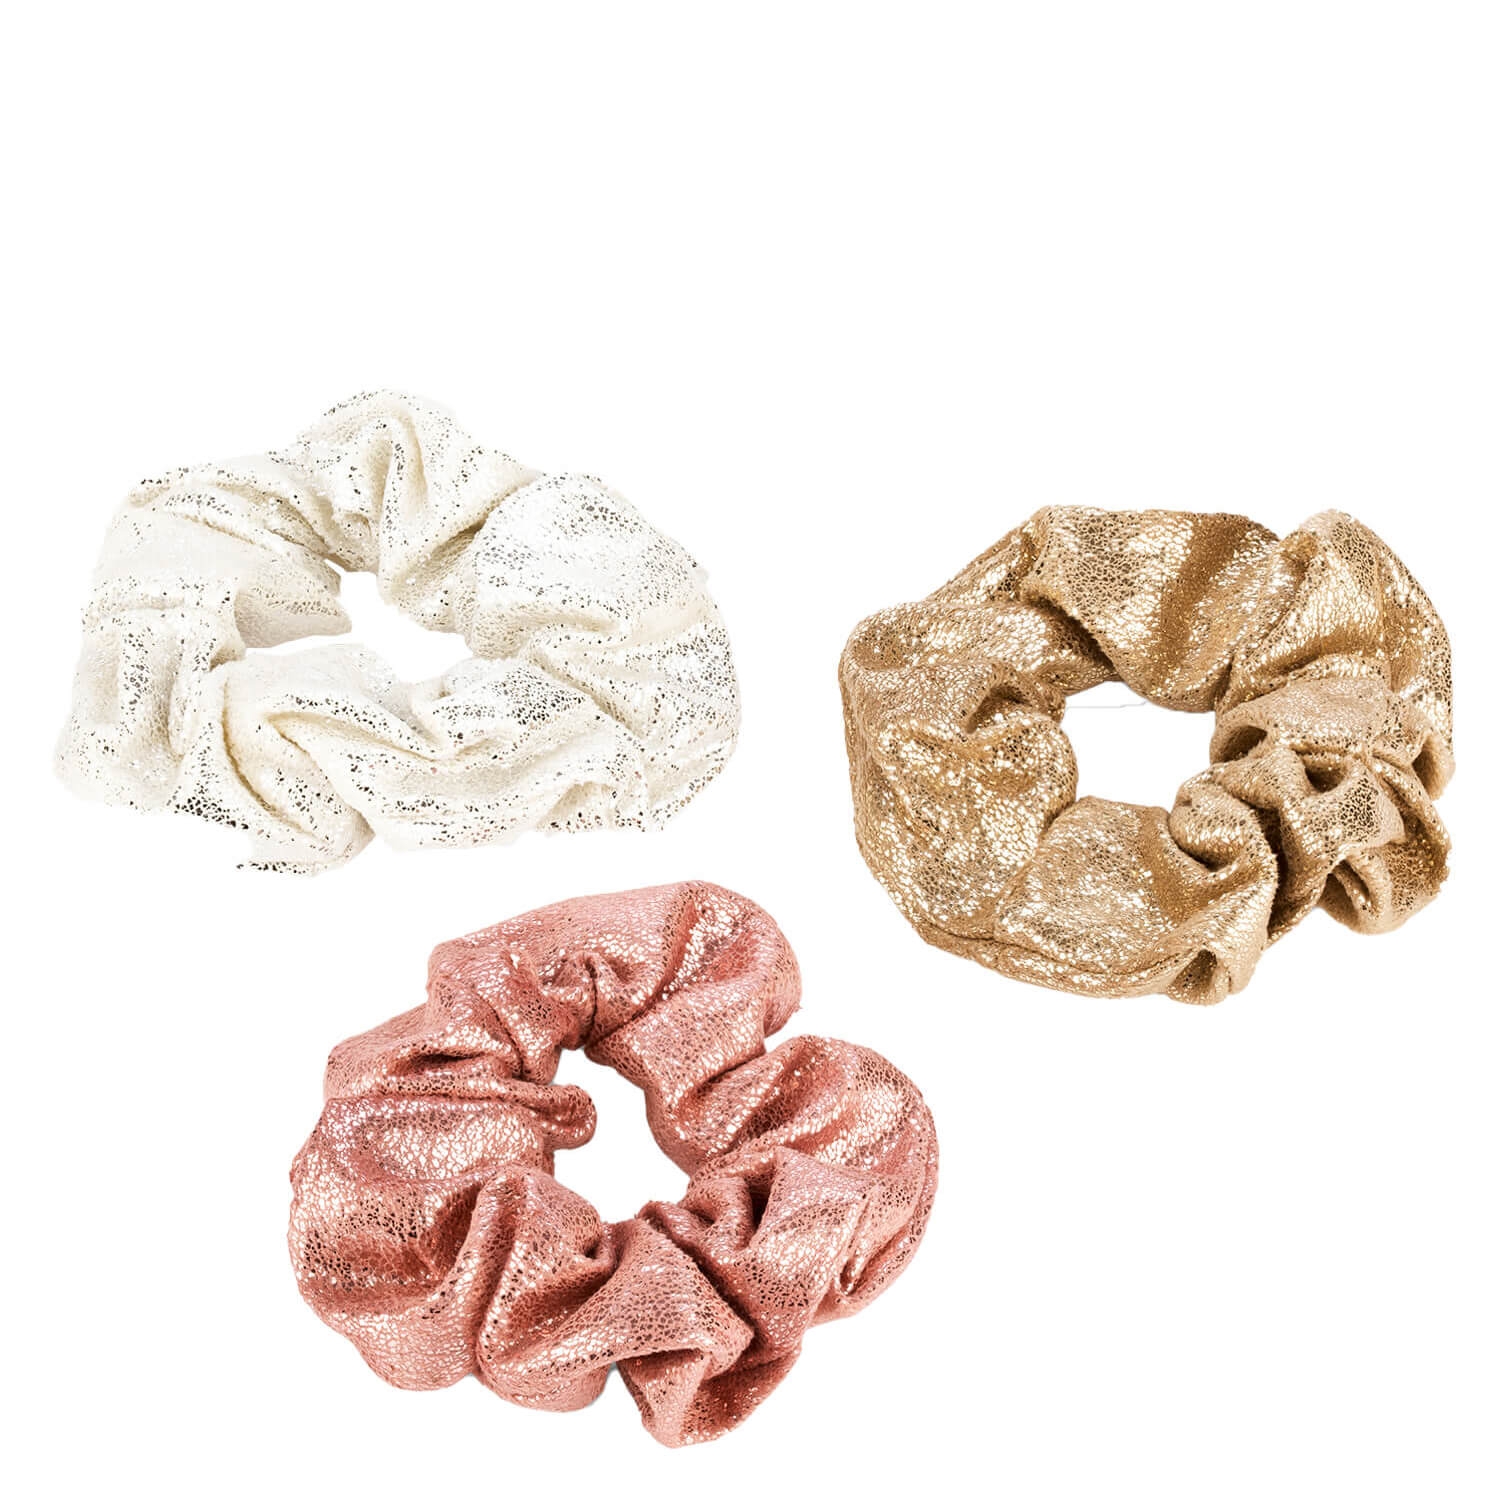 Produktbild von Glänzendes Scrunchie, weiss, rosa & gold